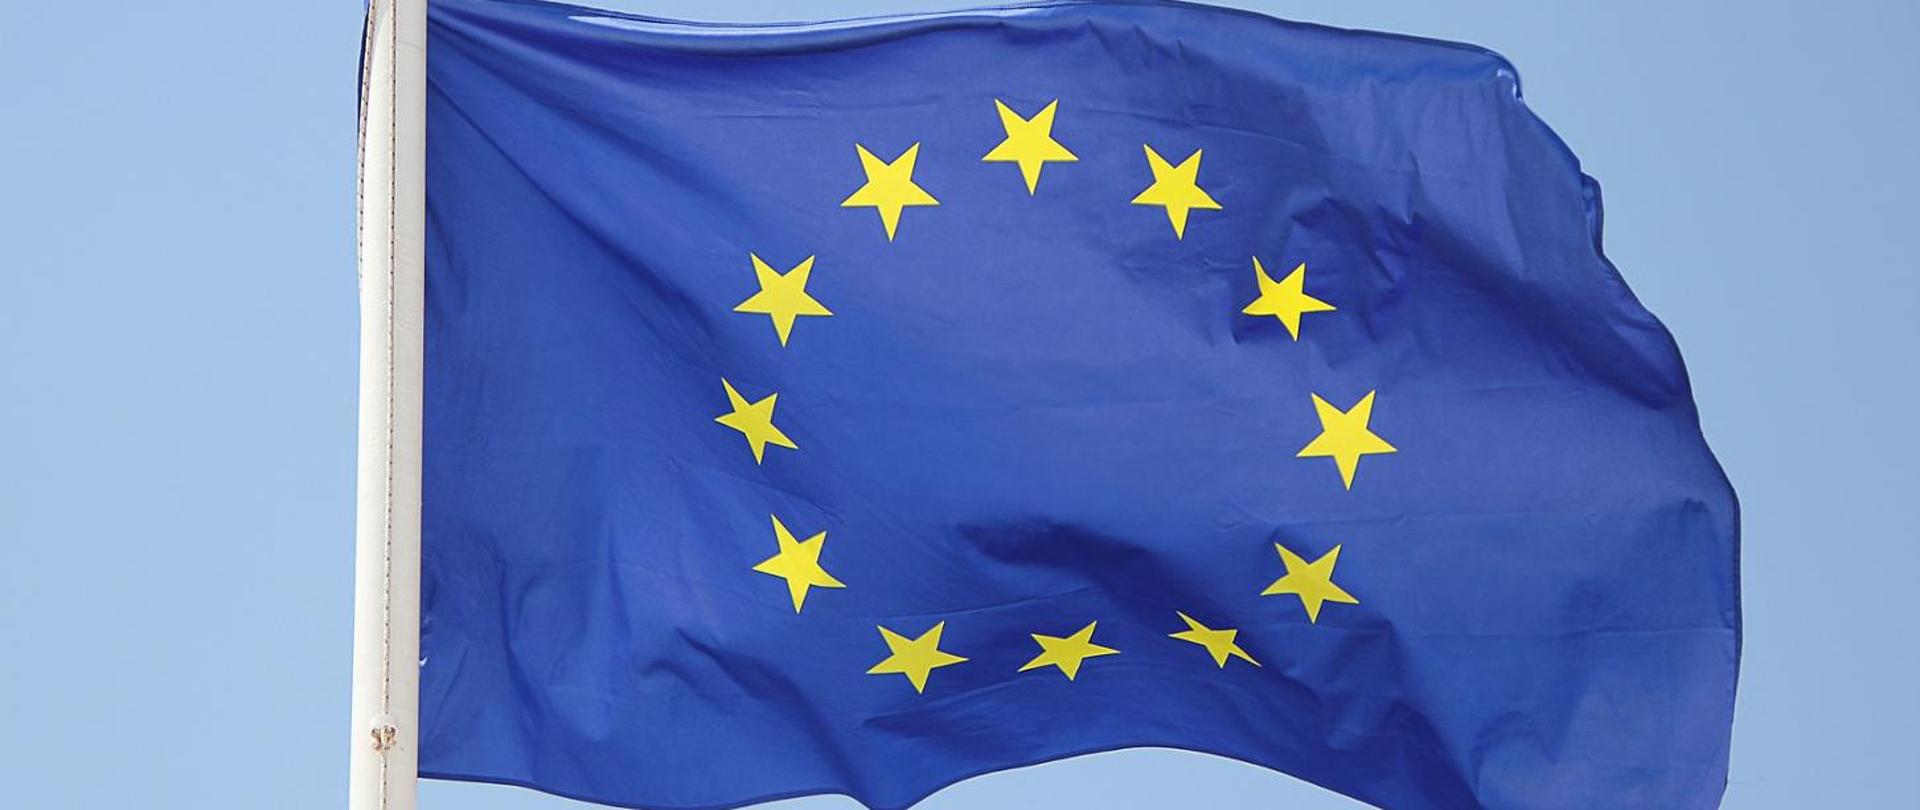 Flaga Unii Europejskiej. Na fladze przedstawiony jest okrąg złożony z dwunastu złotych gwiazd na błękitnym tle.